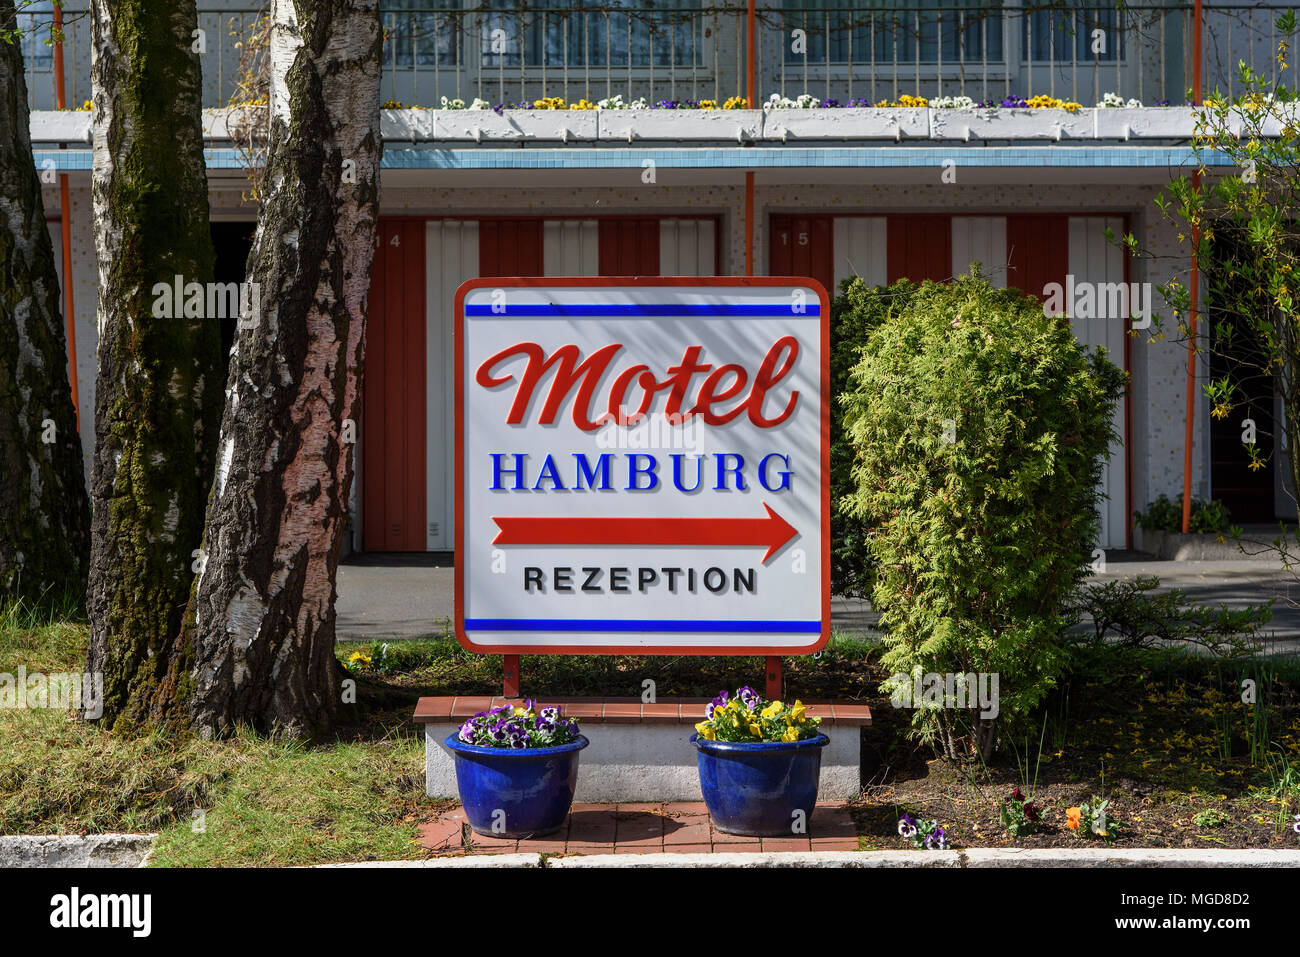 Motel Hamburg Hoheluftchaussee 117-119, Hamburg, Deutschland, Europa  Stockfotografie - Alamy